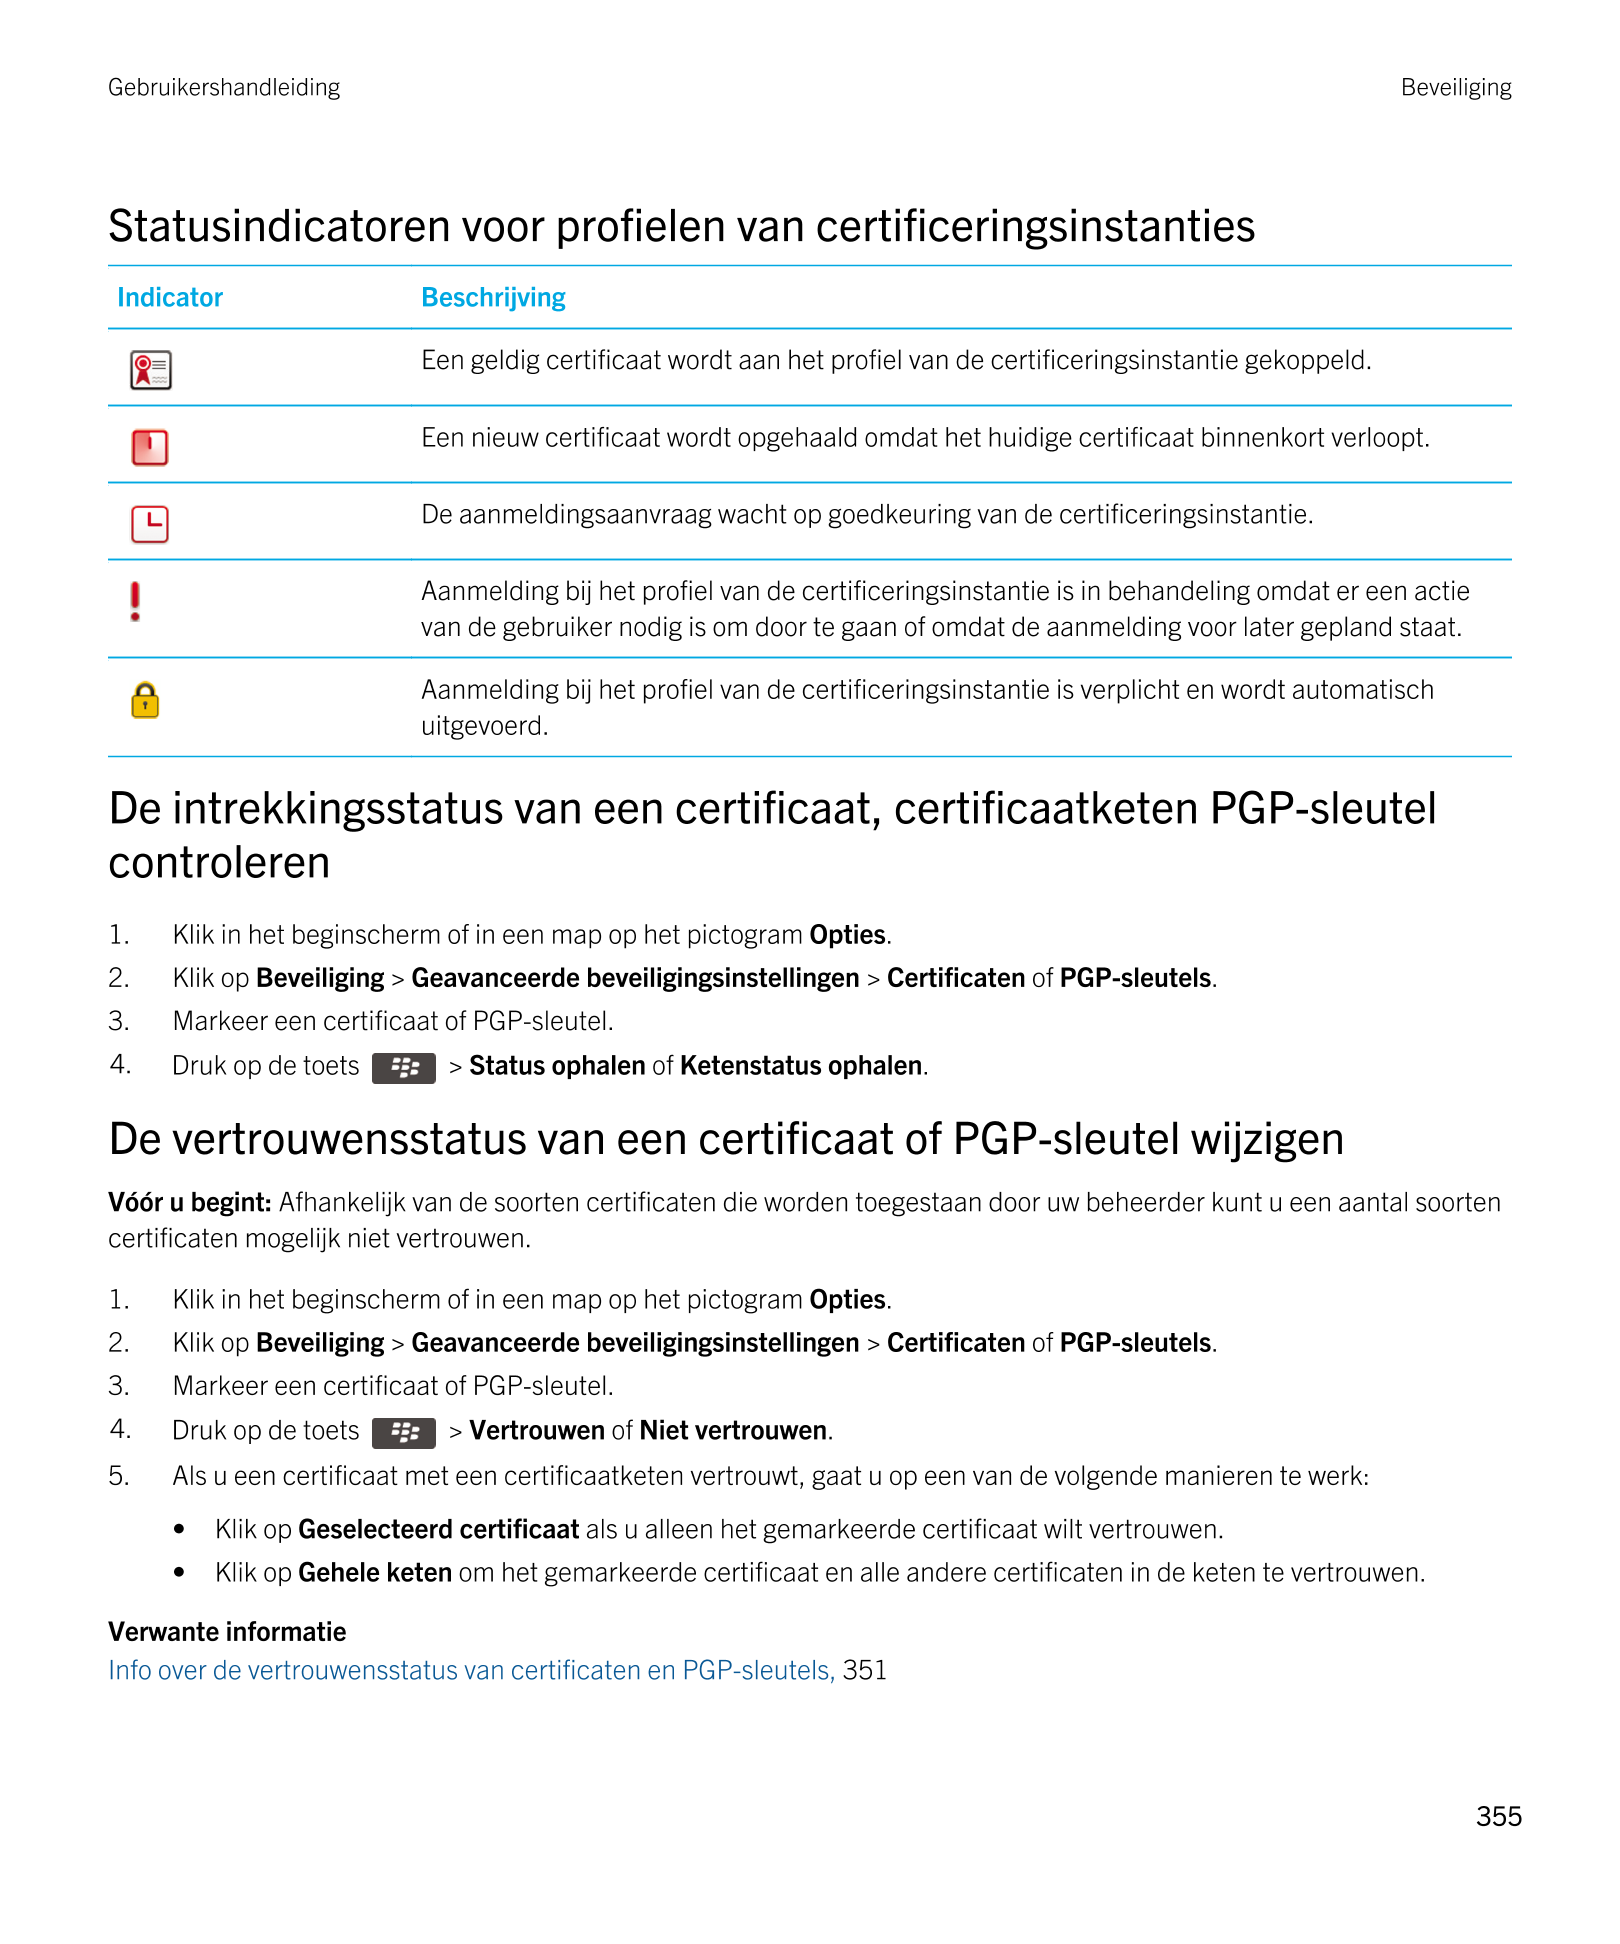 Gebruikershandleiding Beveiliging
Statusindicatoren voor profielen van certificeringsinstanties
Indicator Beschrijving 
  Een ge